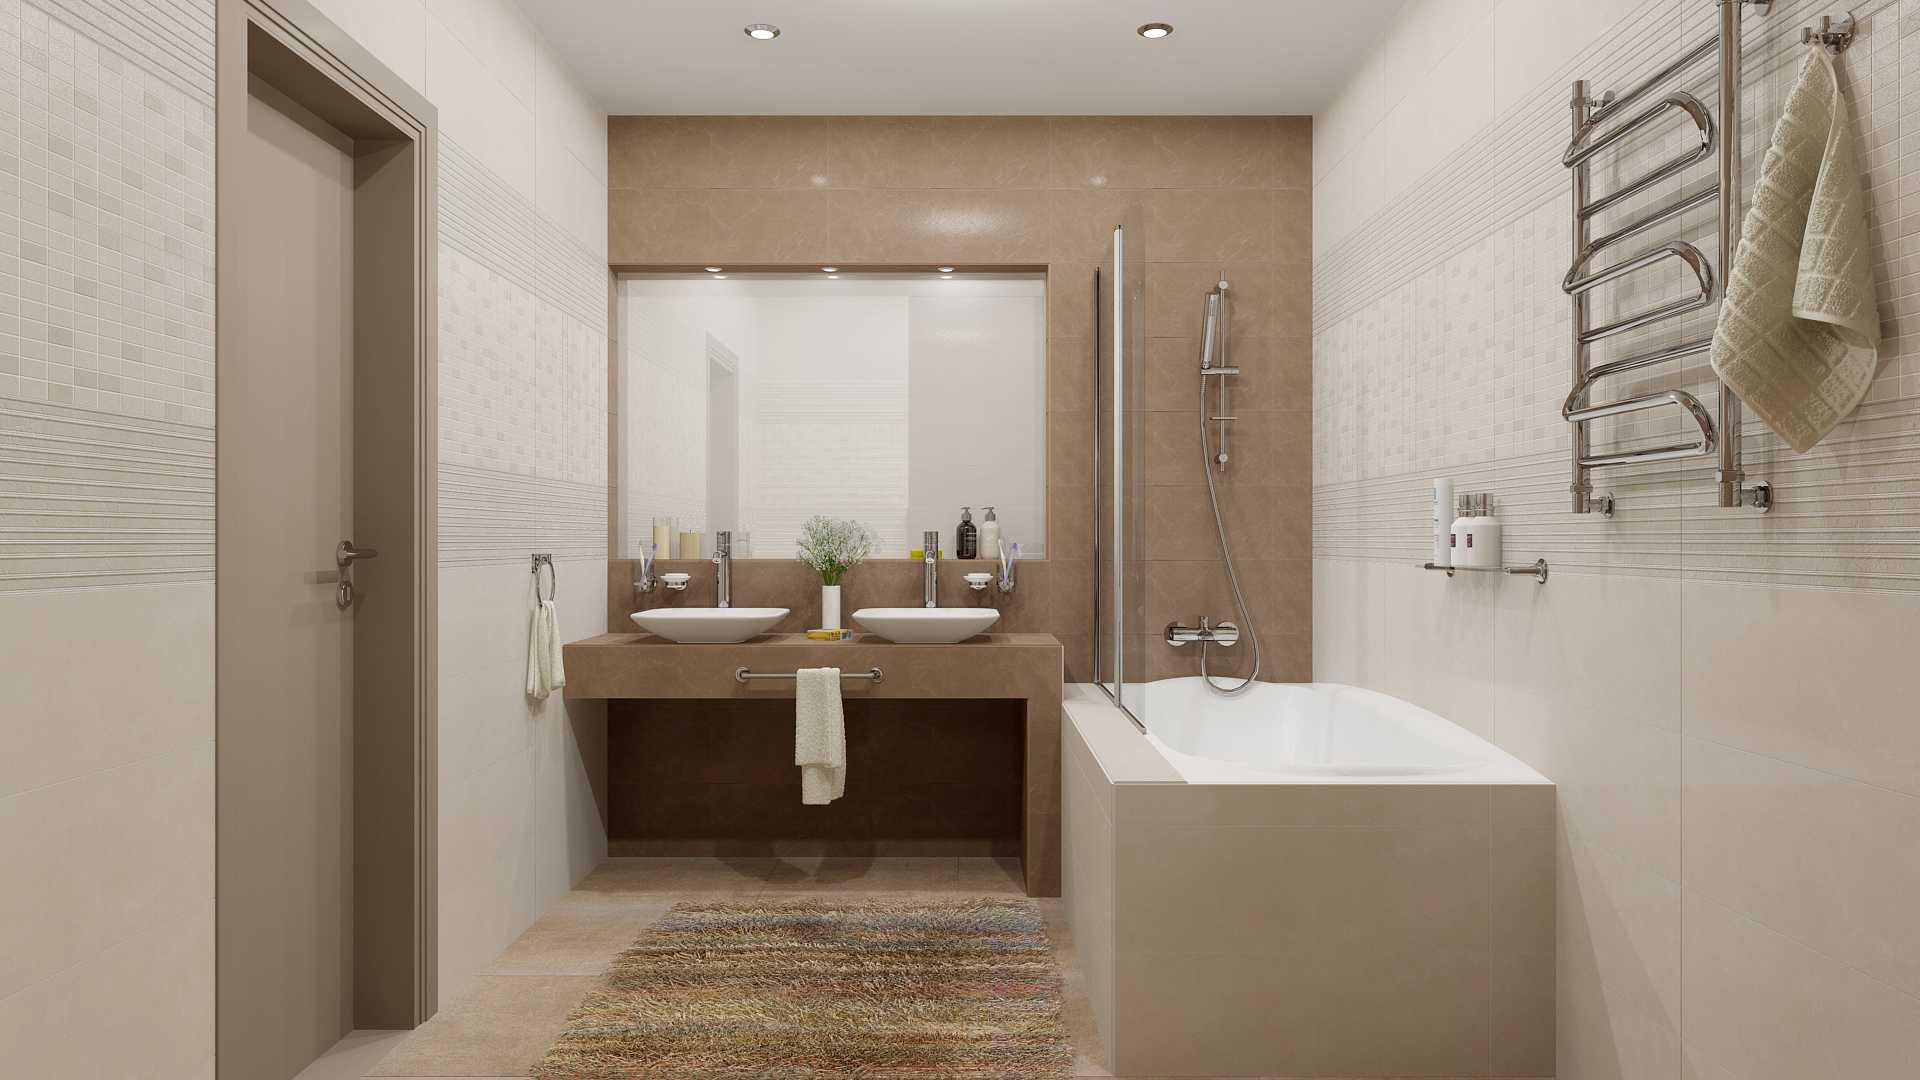 Рассказываем, как стильно оформить дизайн серо-белой ванной комнаты: идеи для отделки и декора